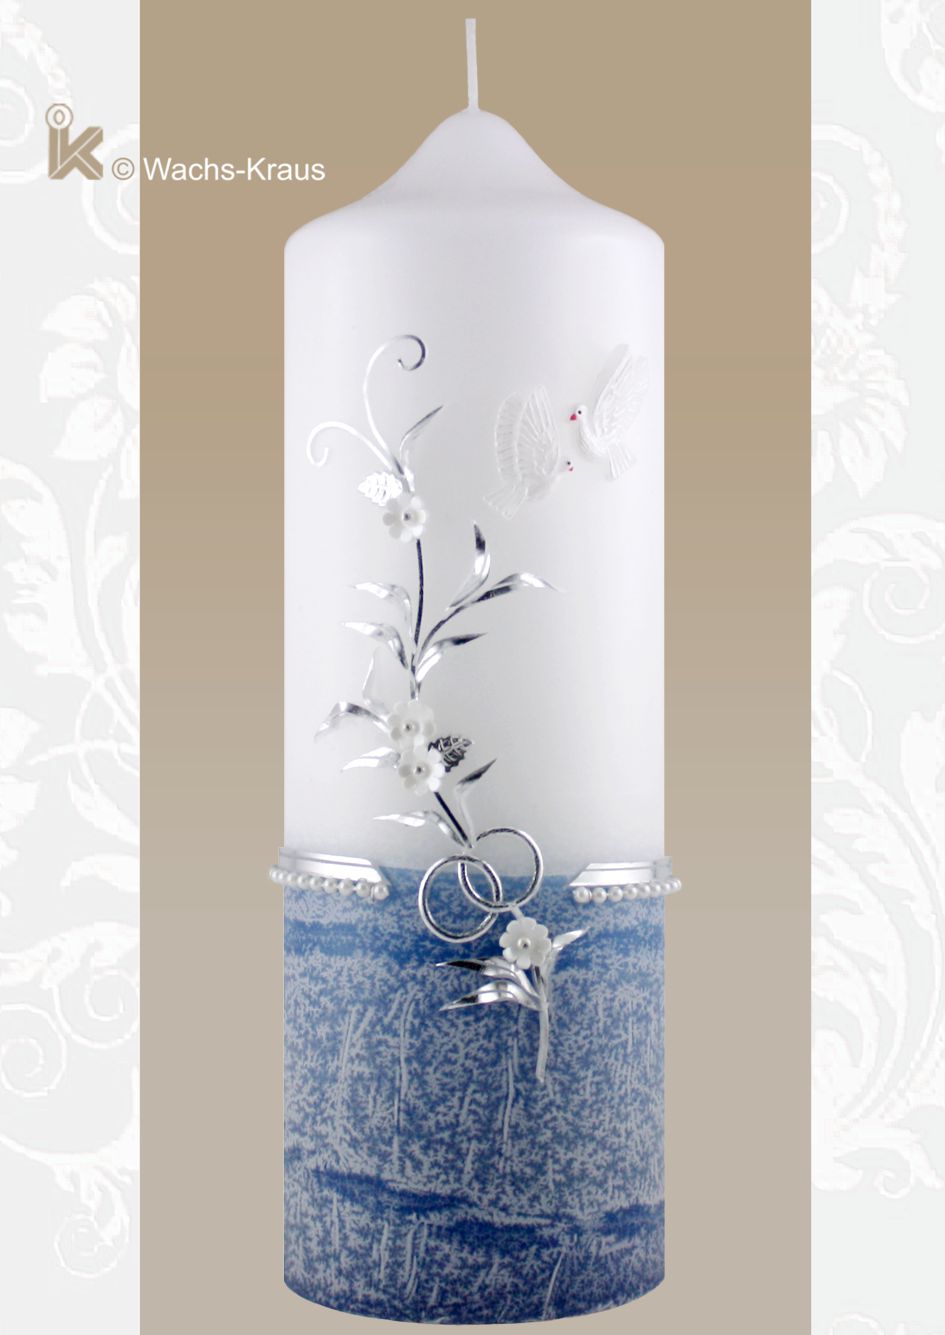 Hochzeitskerze mit silber- blauer Farbkombination, den feinen Blättern, den weißen Blüten und dem aus Wachs gegossenen Tauben-Paar.